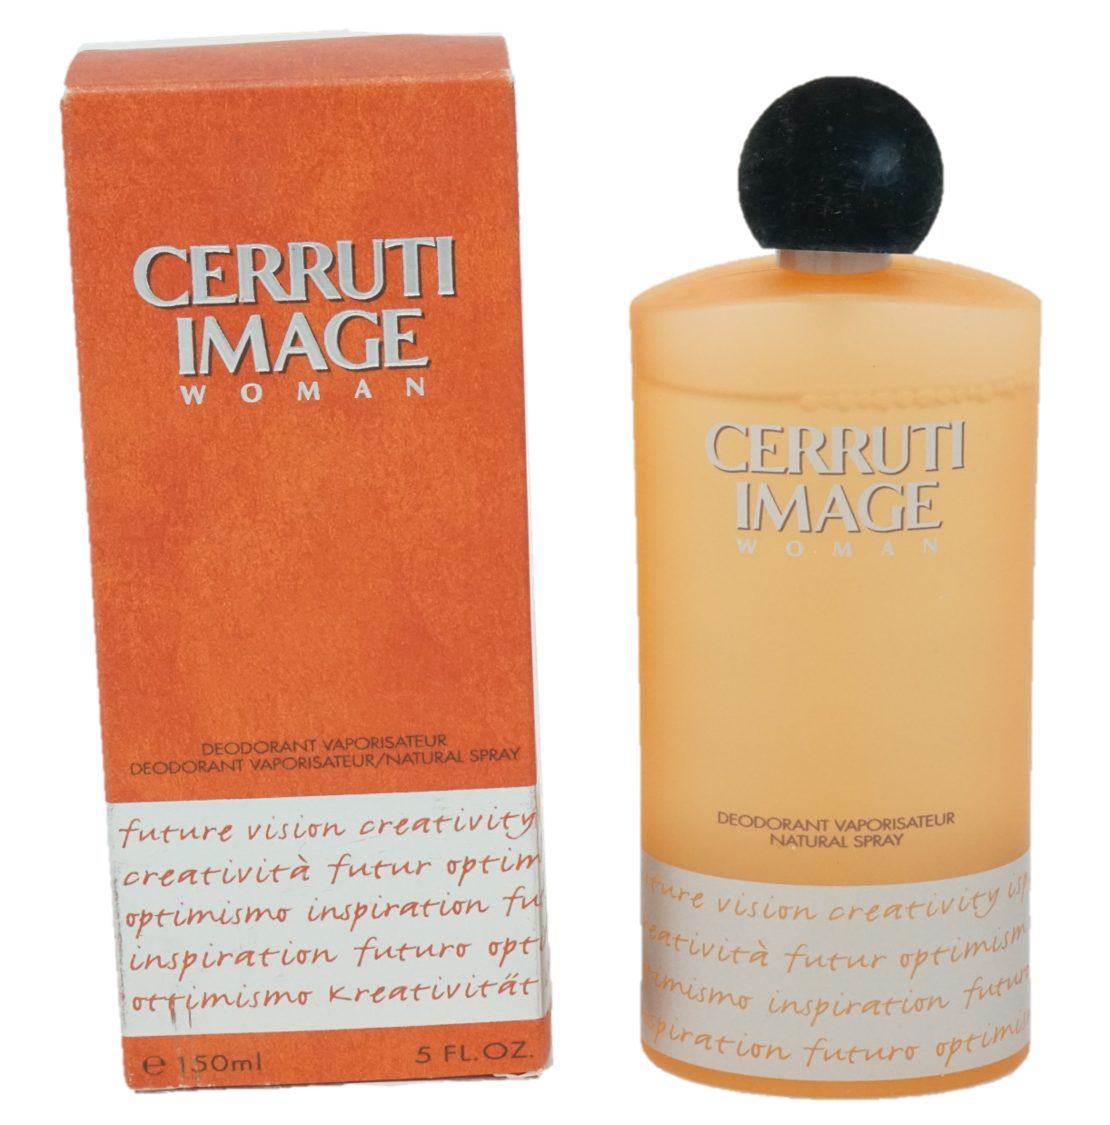 CERRUTI Körperspray Cerruti 150ml Spray Woman Deodorant Image